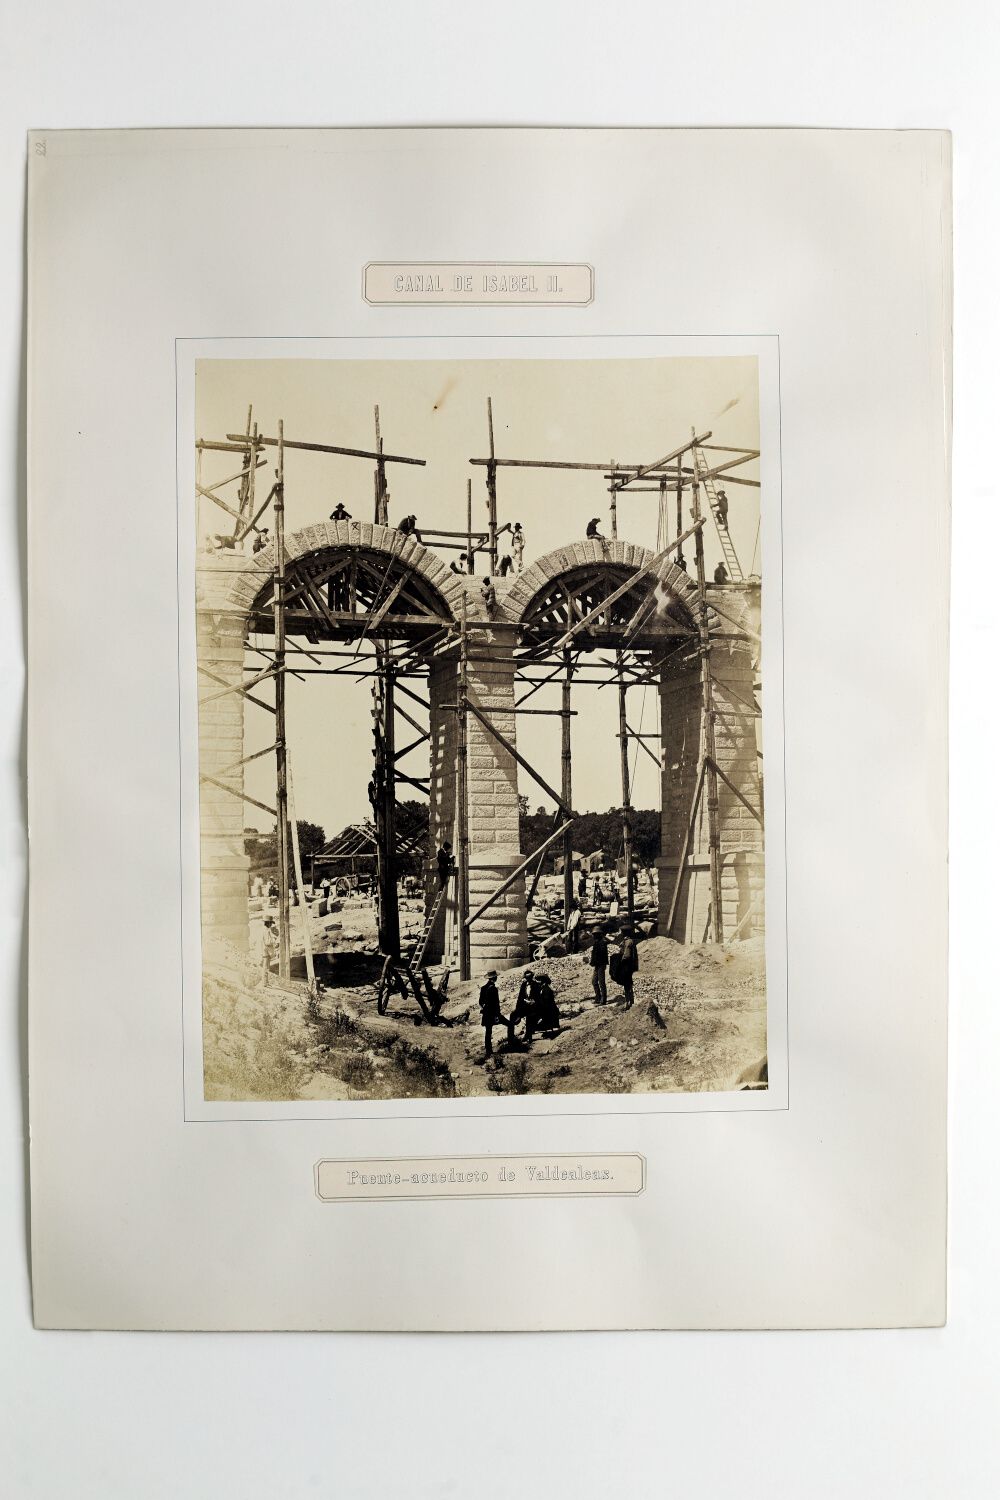 Puente acueducto de Valdealeas. 1858. Real Academia de Bellas Artes de San Fernando (Madrid). Biblioteca 